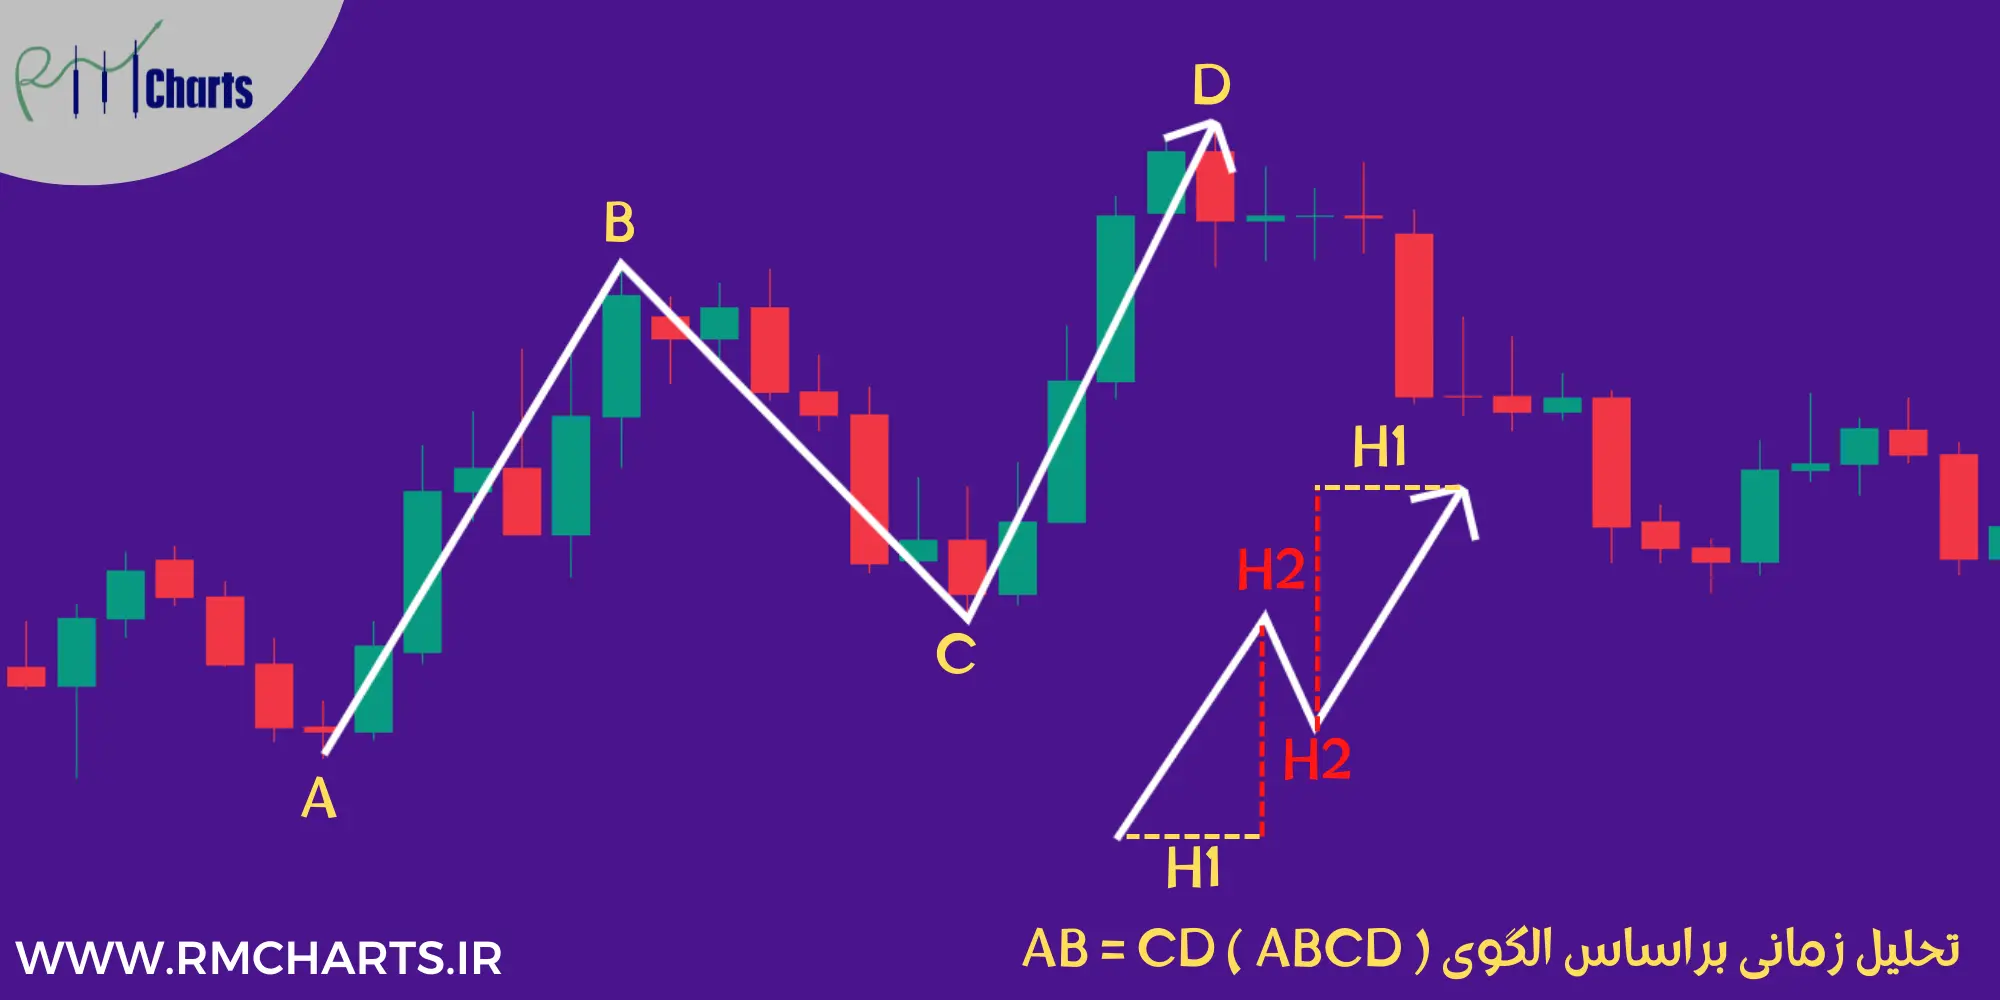 تحلیل زمانی براساس الگوی AB = CD ( ABCD )